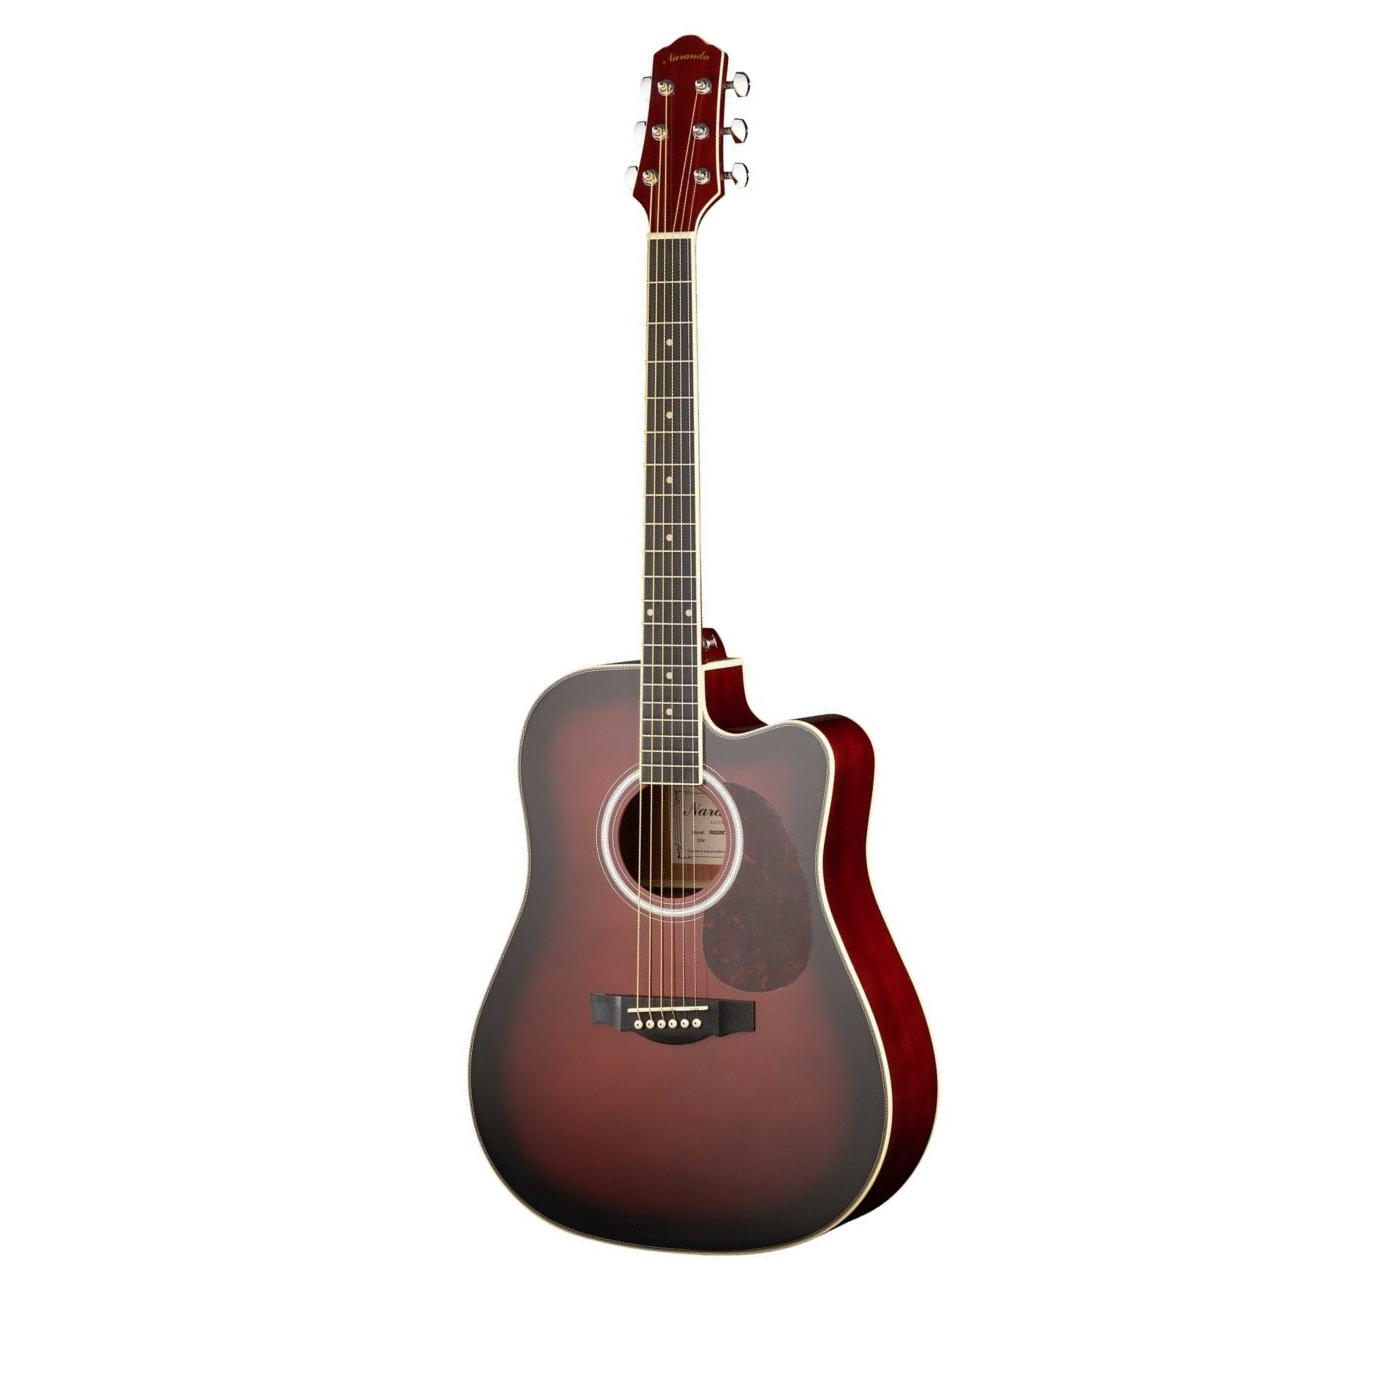 Акустические гитары Naranda DG220CWRS гитара акустическая дерево 97см с вырезом